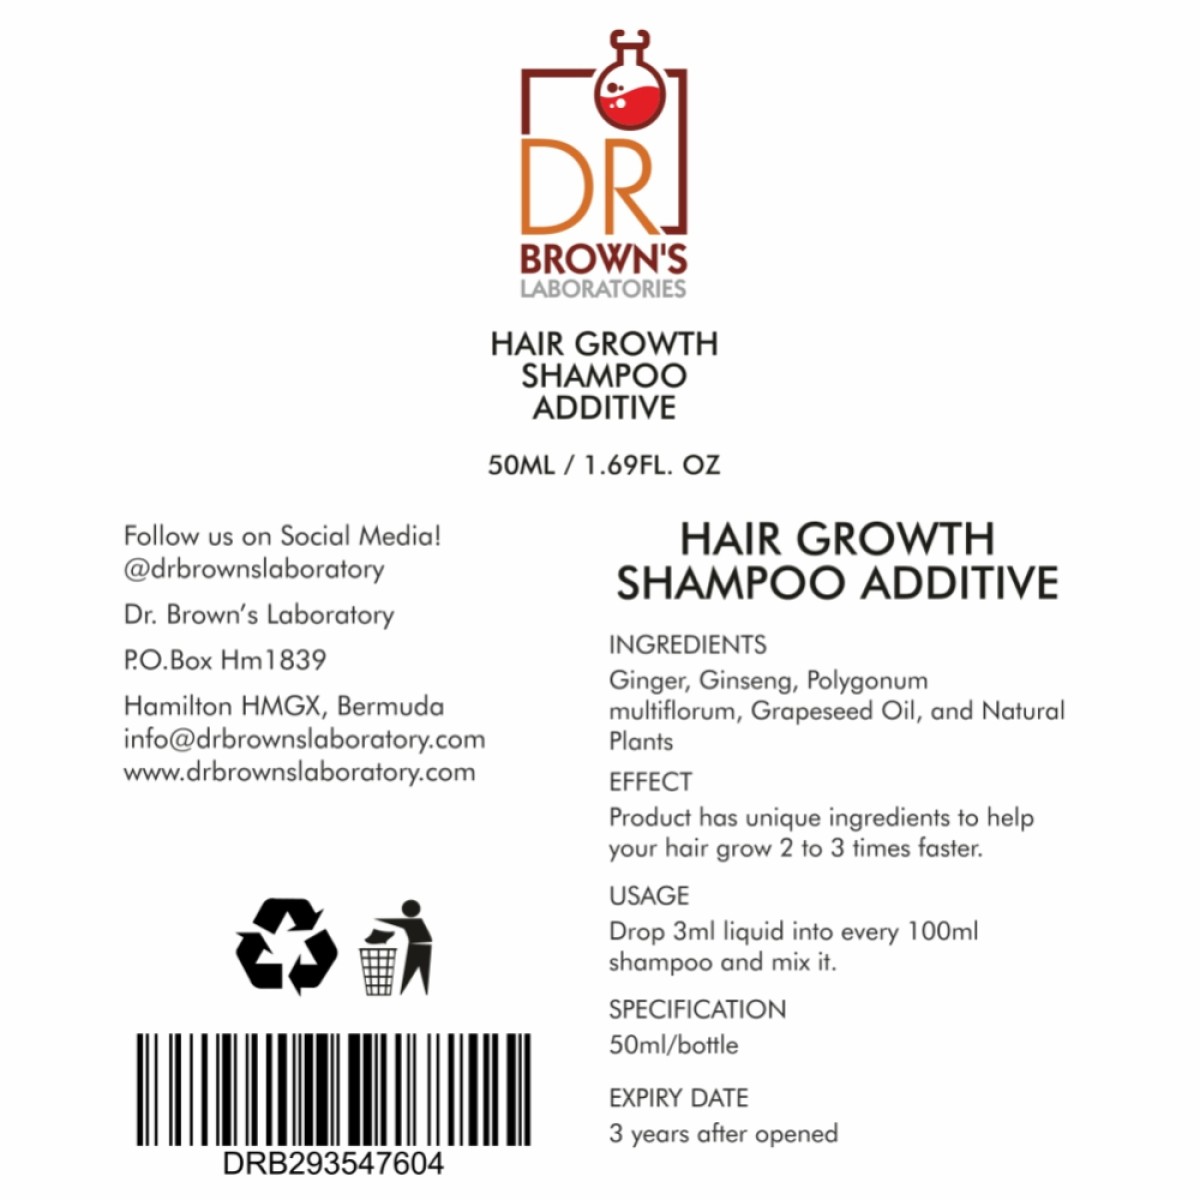 Hair Growth Shampoo Additive